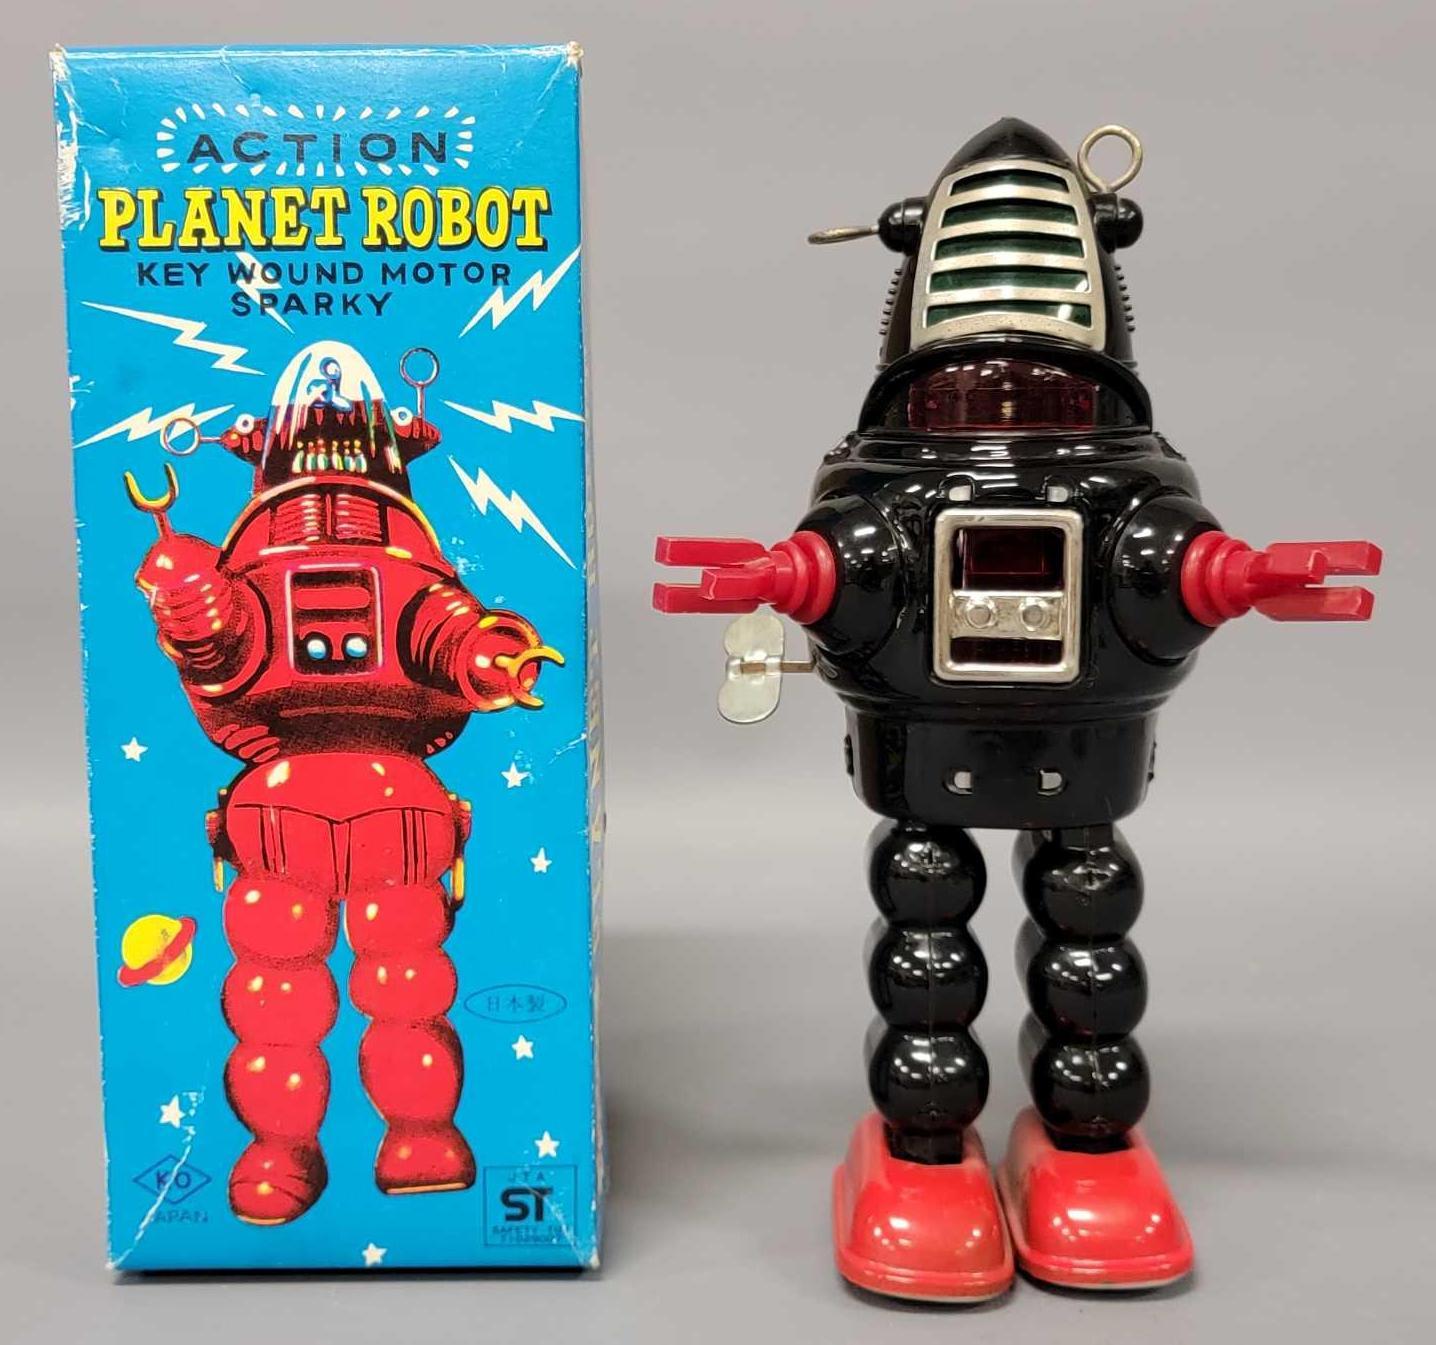 Planet Robot Yoshiya KO Japan key wound sparky motor Robot in 